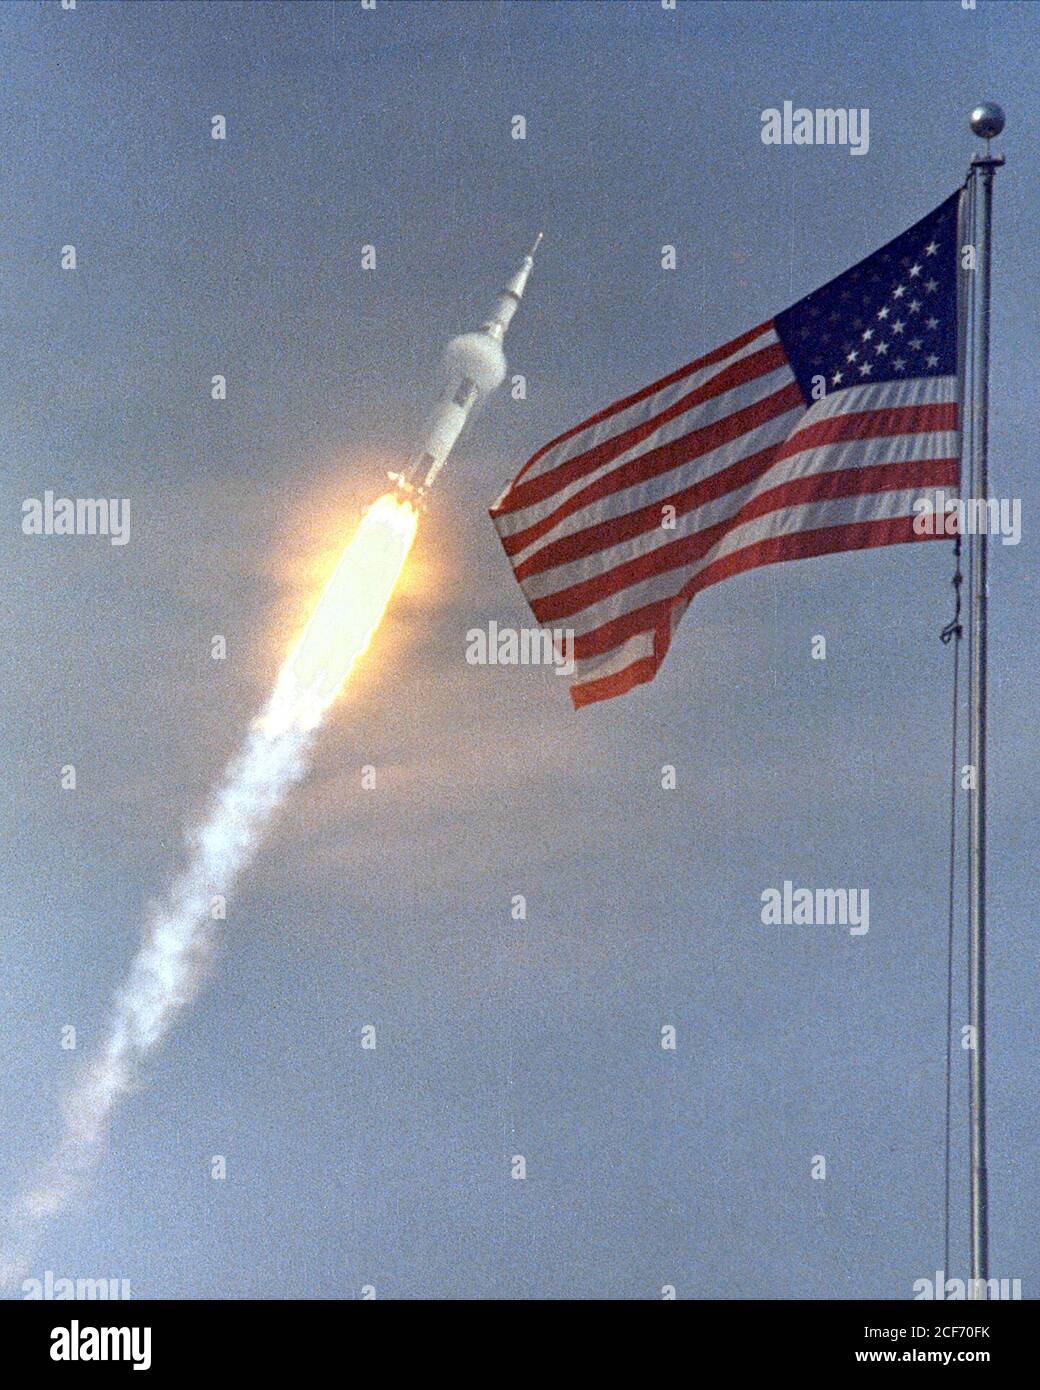 Die amerikanische Flagge läutet der Flug von Apollo 11, die erste Mondlandung Mission. Das Raumfahrzeug Apollo 11 Saturn V abgehoben mit Astronauten Michael Collins, Neil A. Armstrong und Edwin E. Aldrin, Jr., um 9:32 Uhr EDT 16. Juli 1969, vom Kennedy Space Center Launch Complex 39A. Während der geplanten acht-Tage-Mission wird Armstrong und Aldrin absteigen in einer Mondlandefähre auf der Oberfläche des Mondes während Collins Mehraufwand bei der Monitorbox umkreist. Die beiden Astronauten sollen auf dem Mond, einschließlich zwei und eine halbe Stunden außerhalb der Mondfähre 22 Stunden verbringen. Sie werden Proben von lunar sammeln. Stockfoto